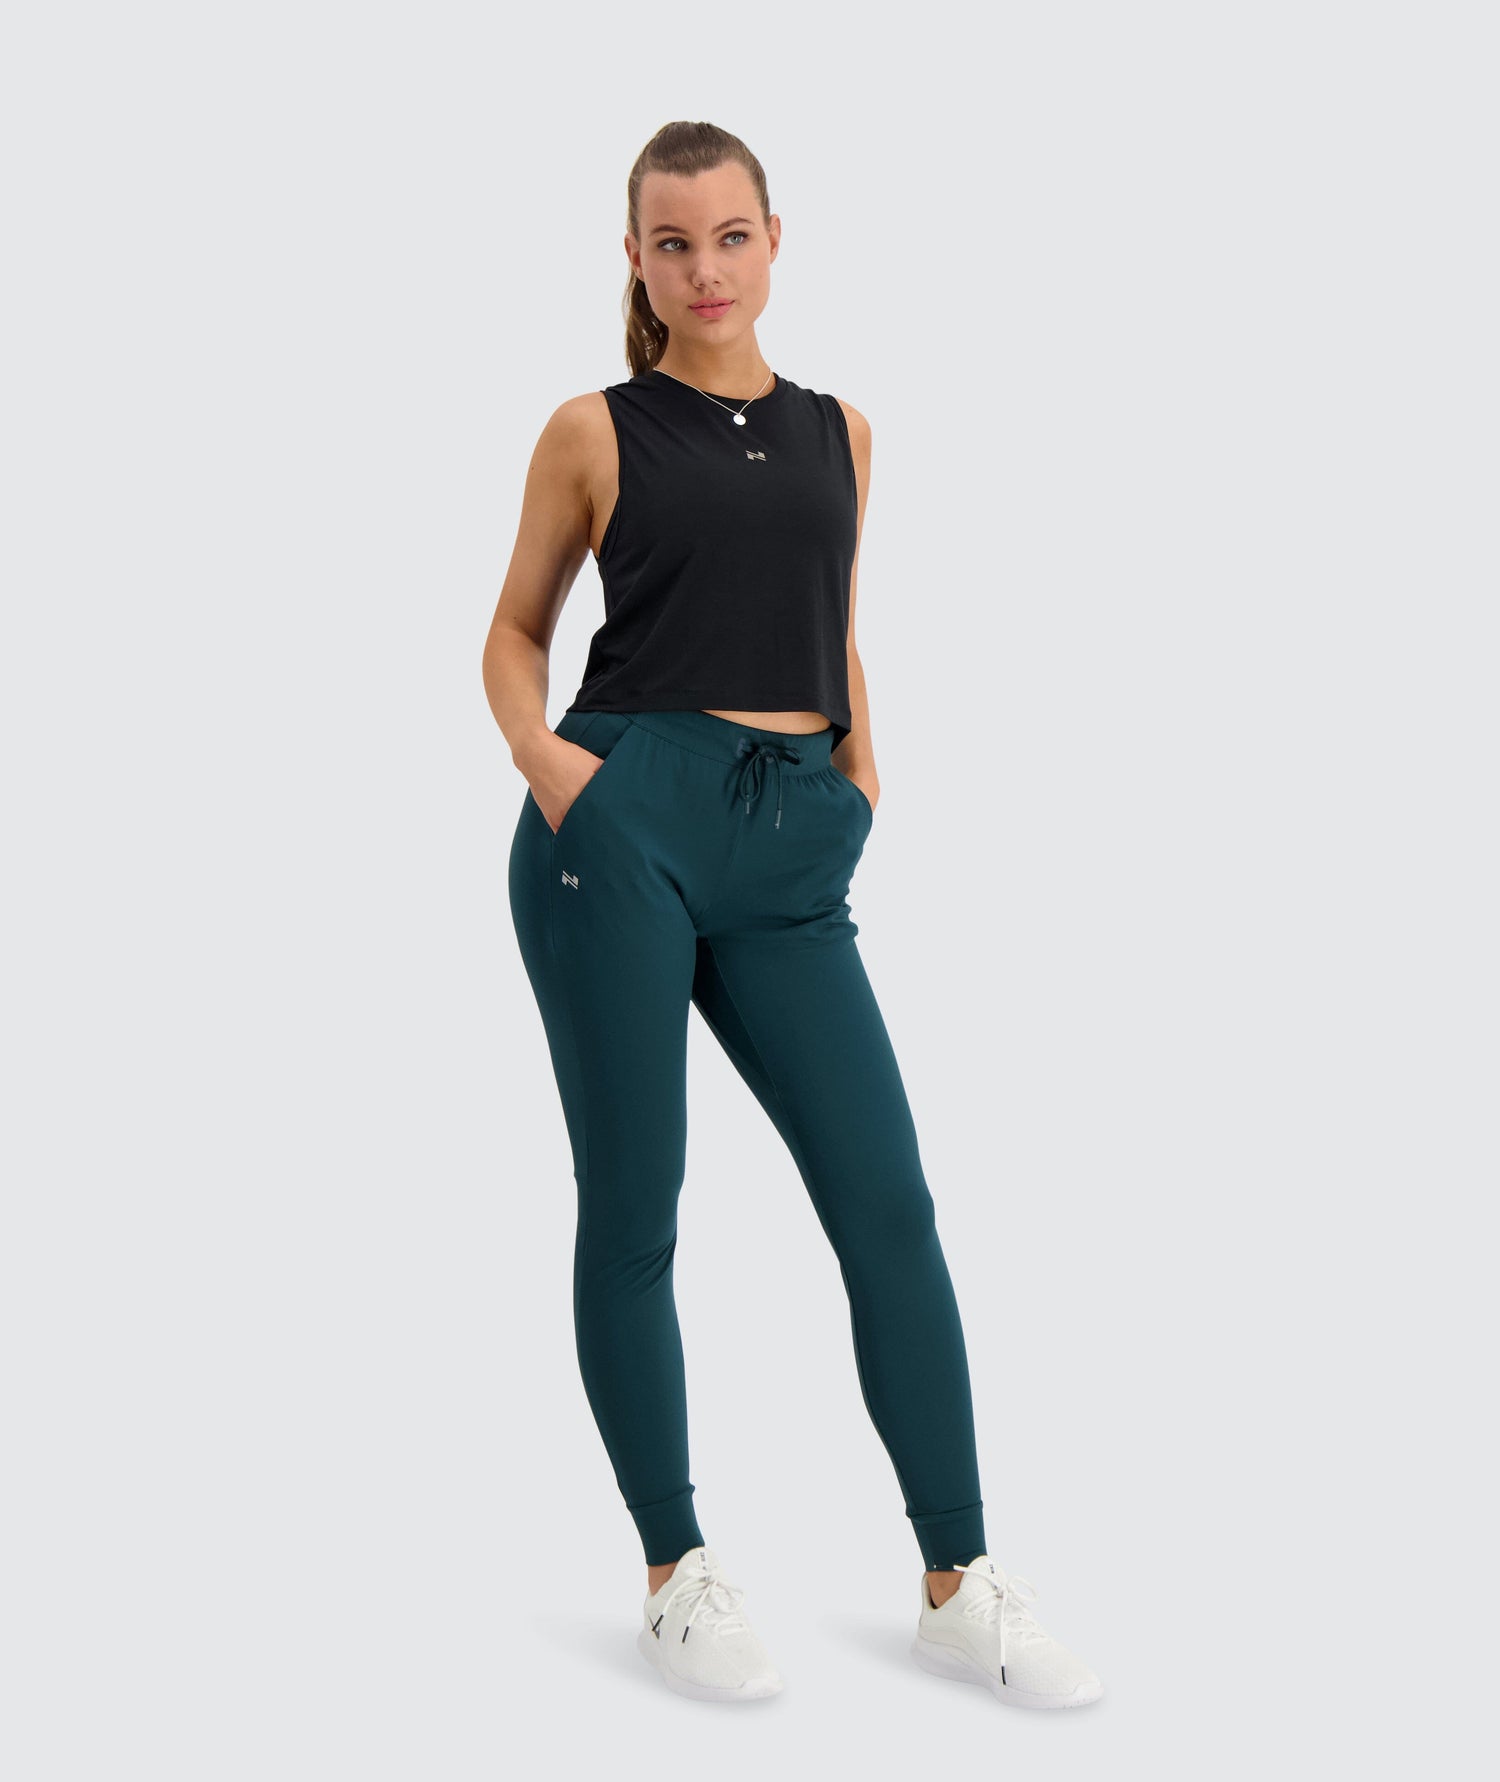 GYMNATION Women's Training Joggers - Oeko-Tex Certified Fabric – Weekendbee  - premium sportswear